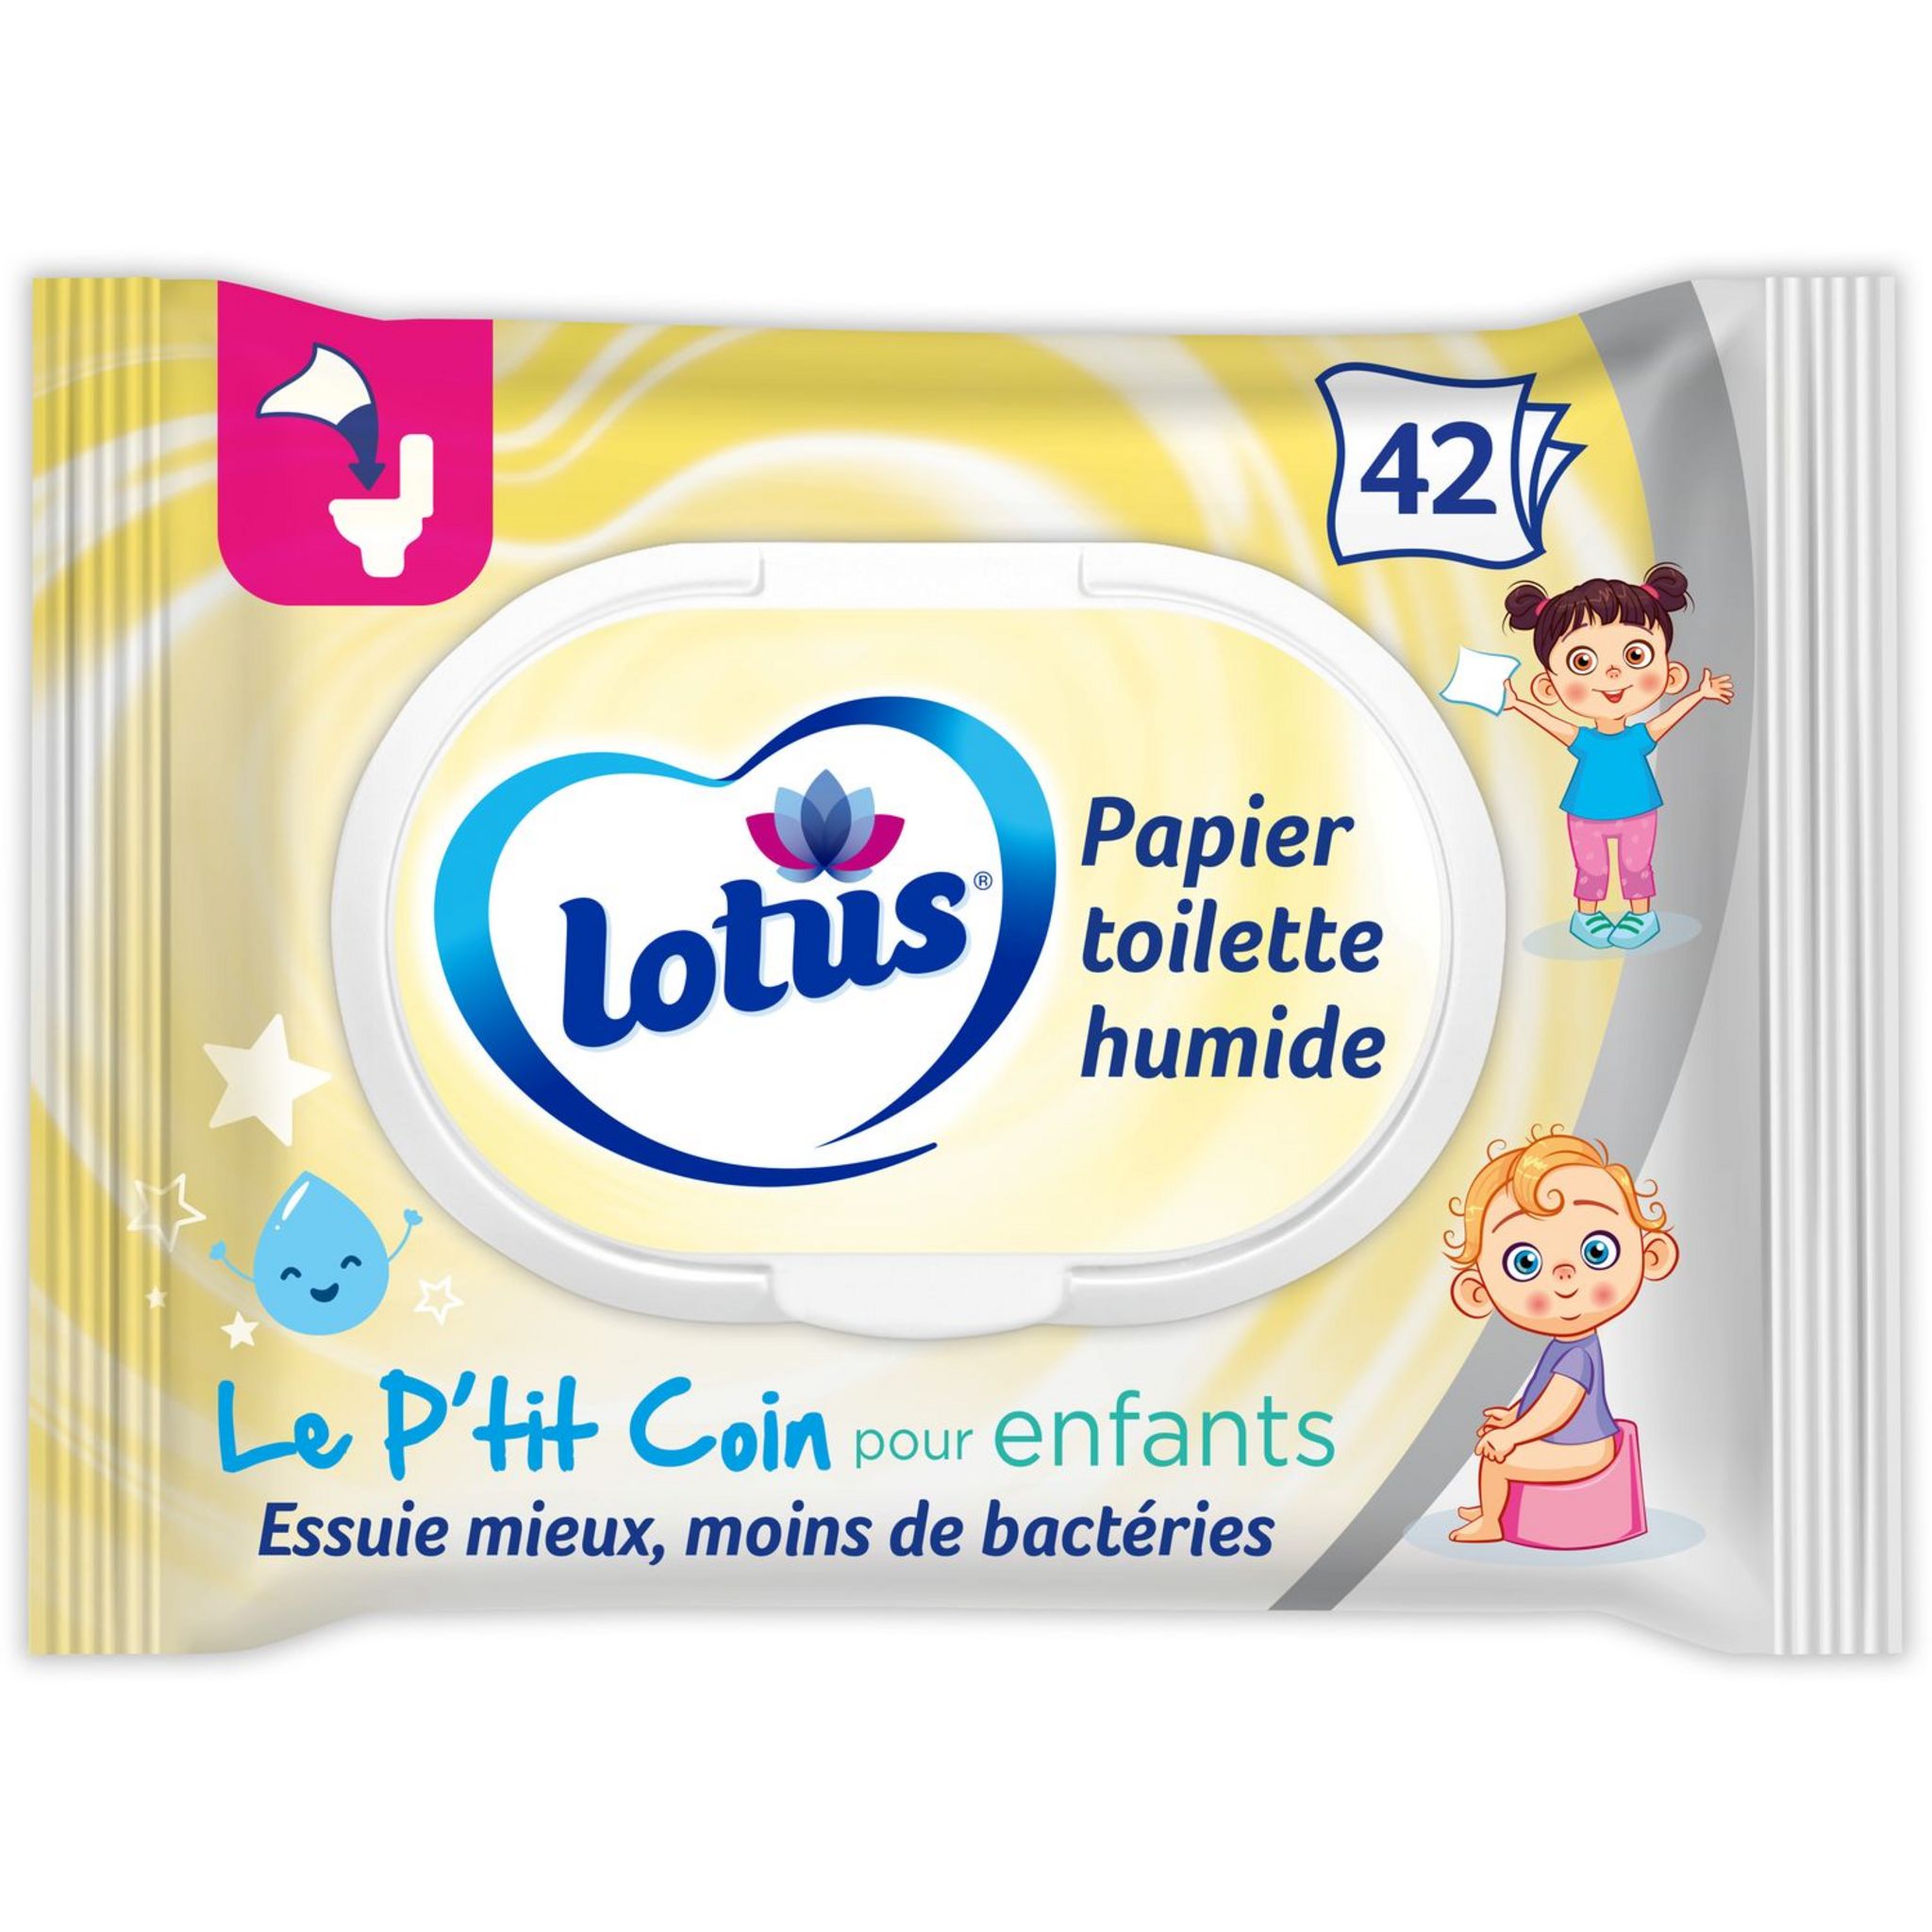 Infos sur le papier toilette humide Lotus - Lotus